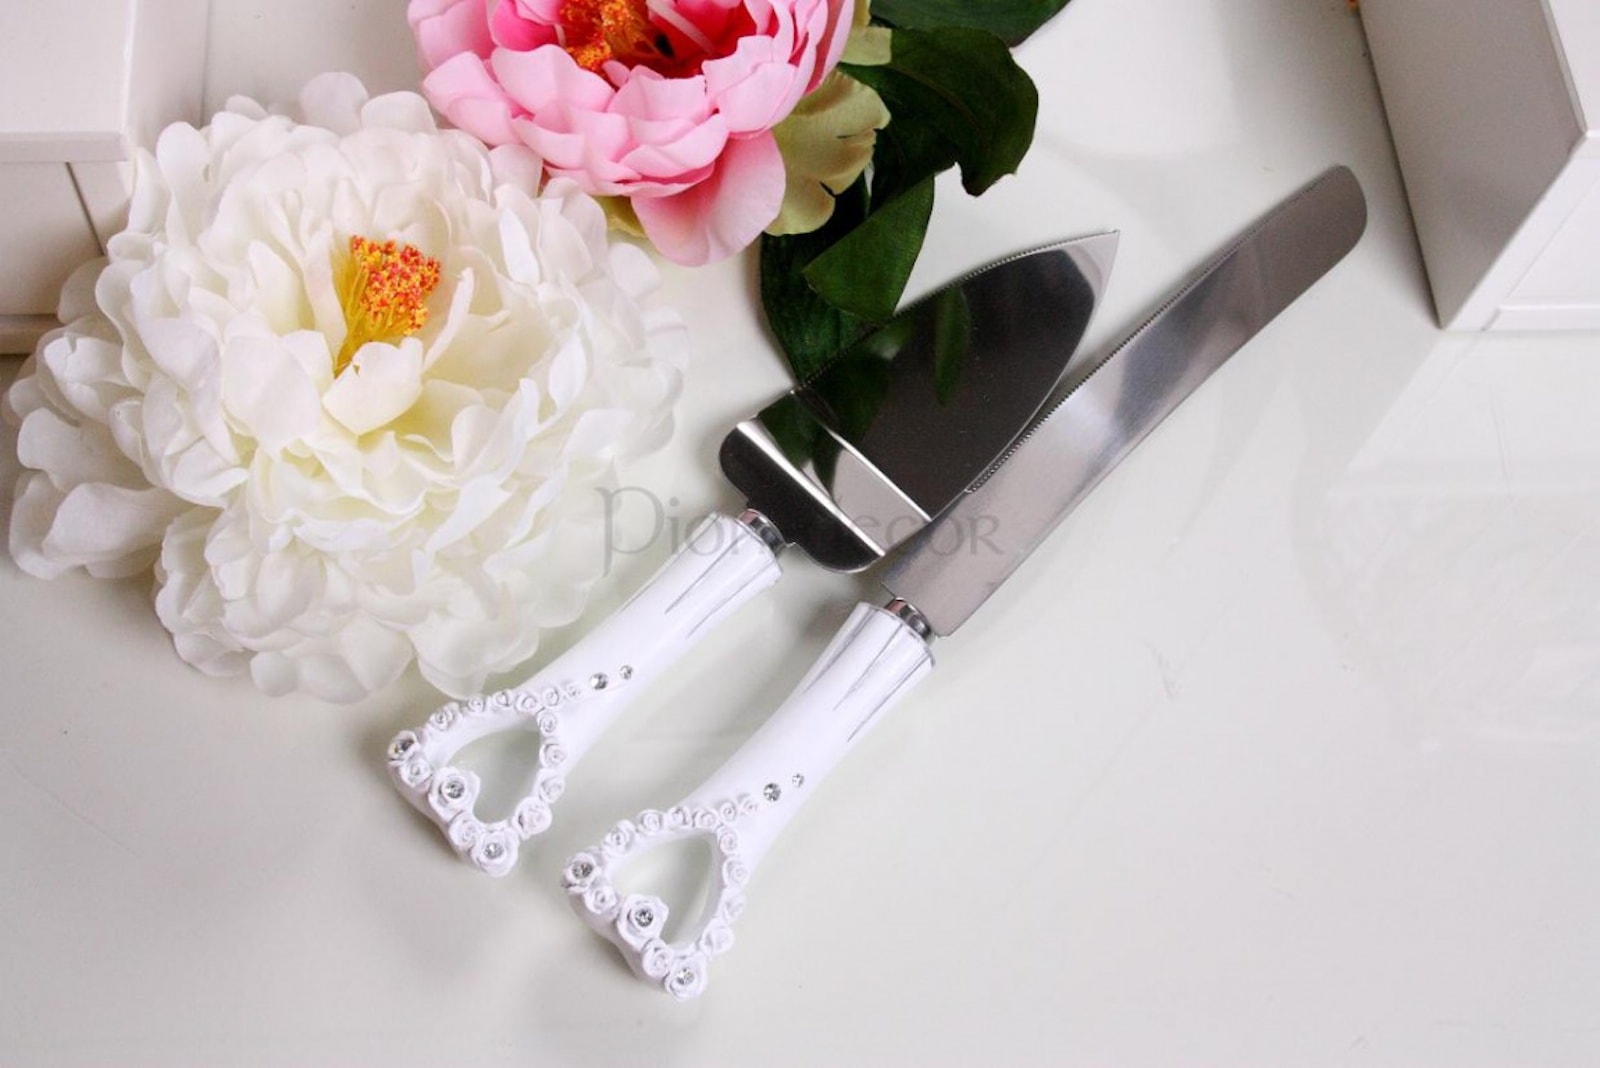 Нож и лопатка для свадебного торта с украшениями